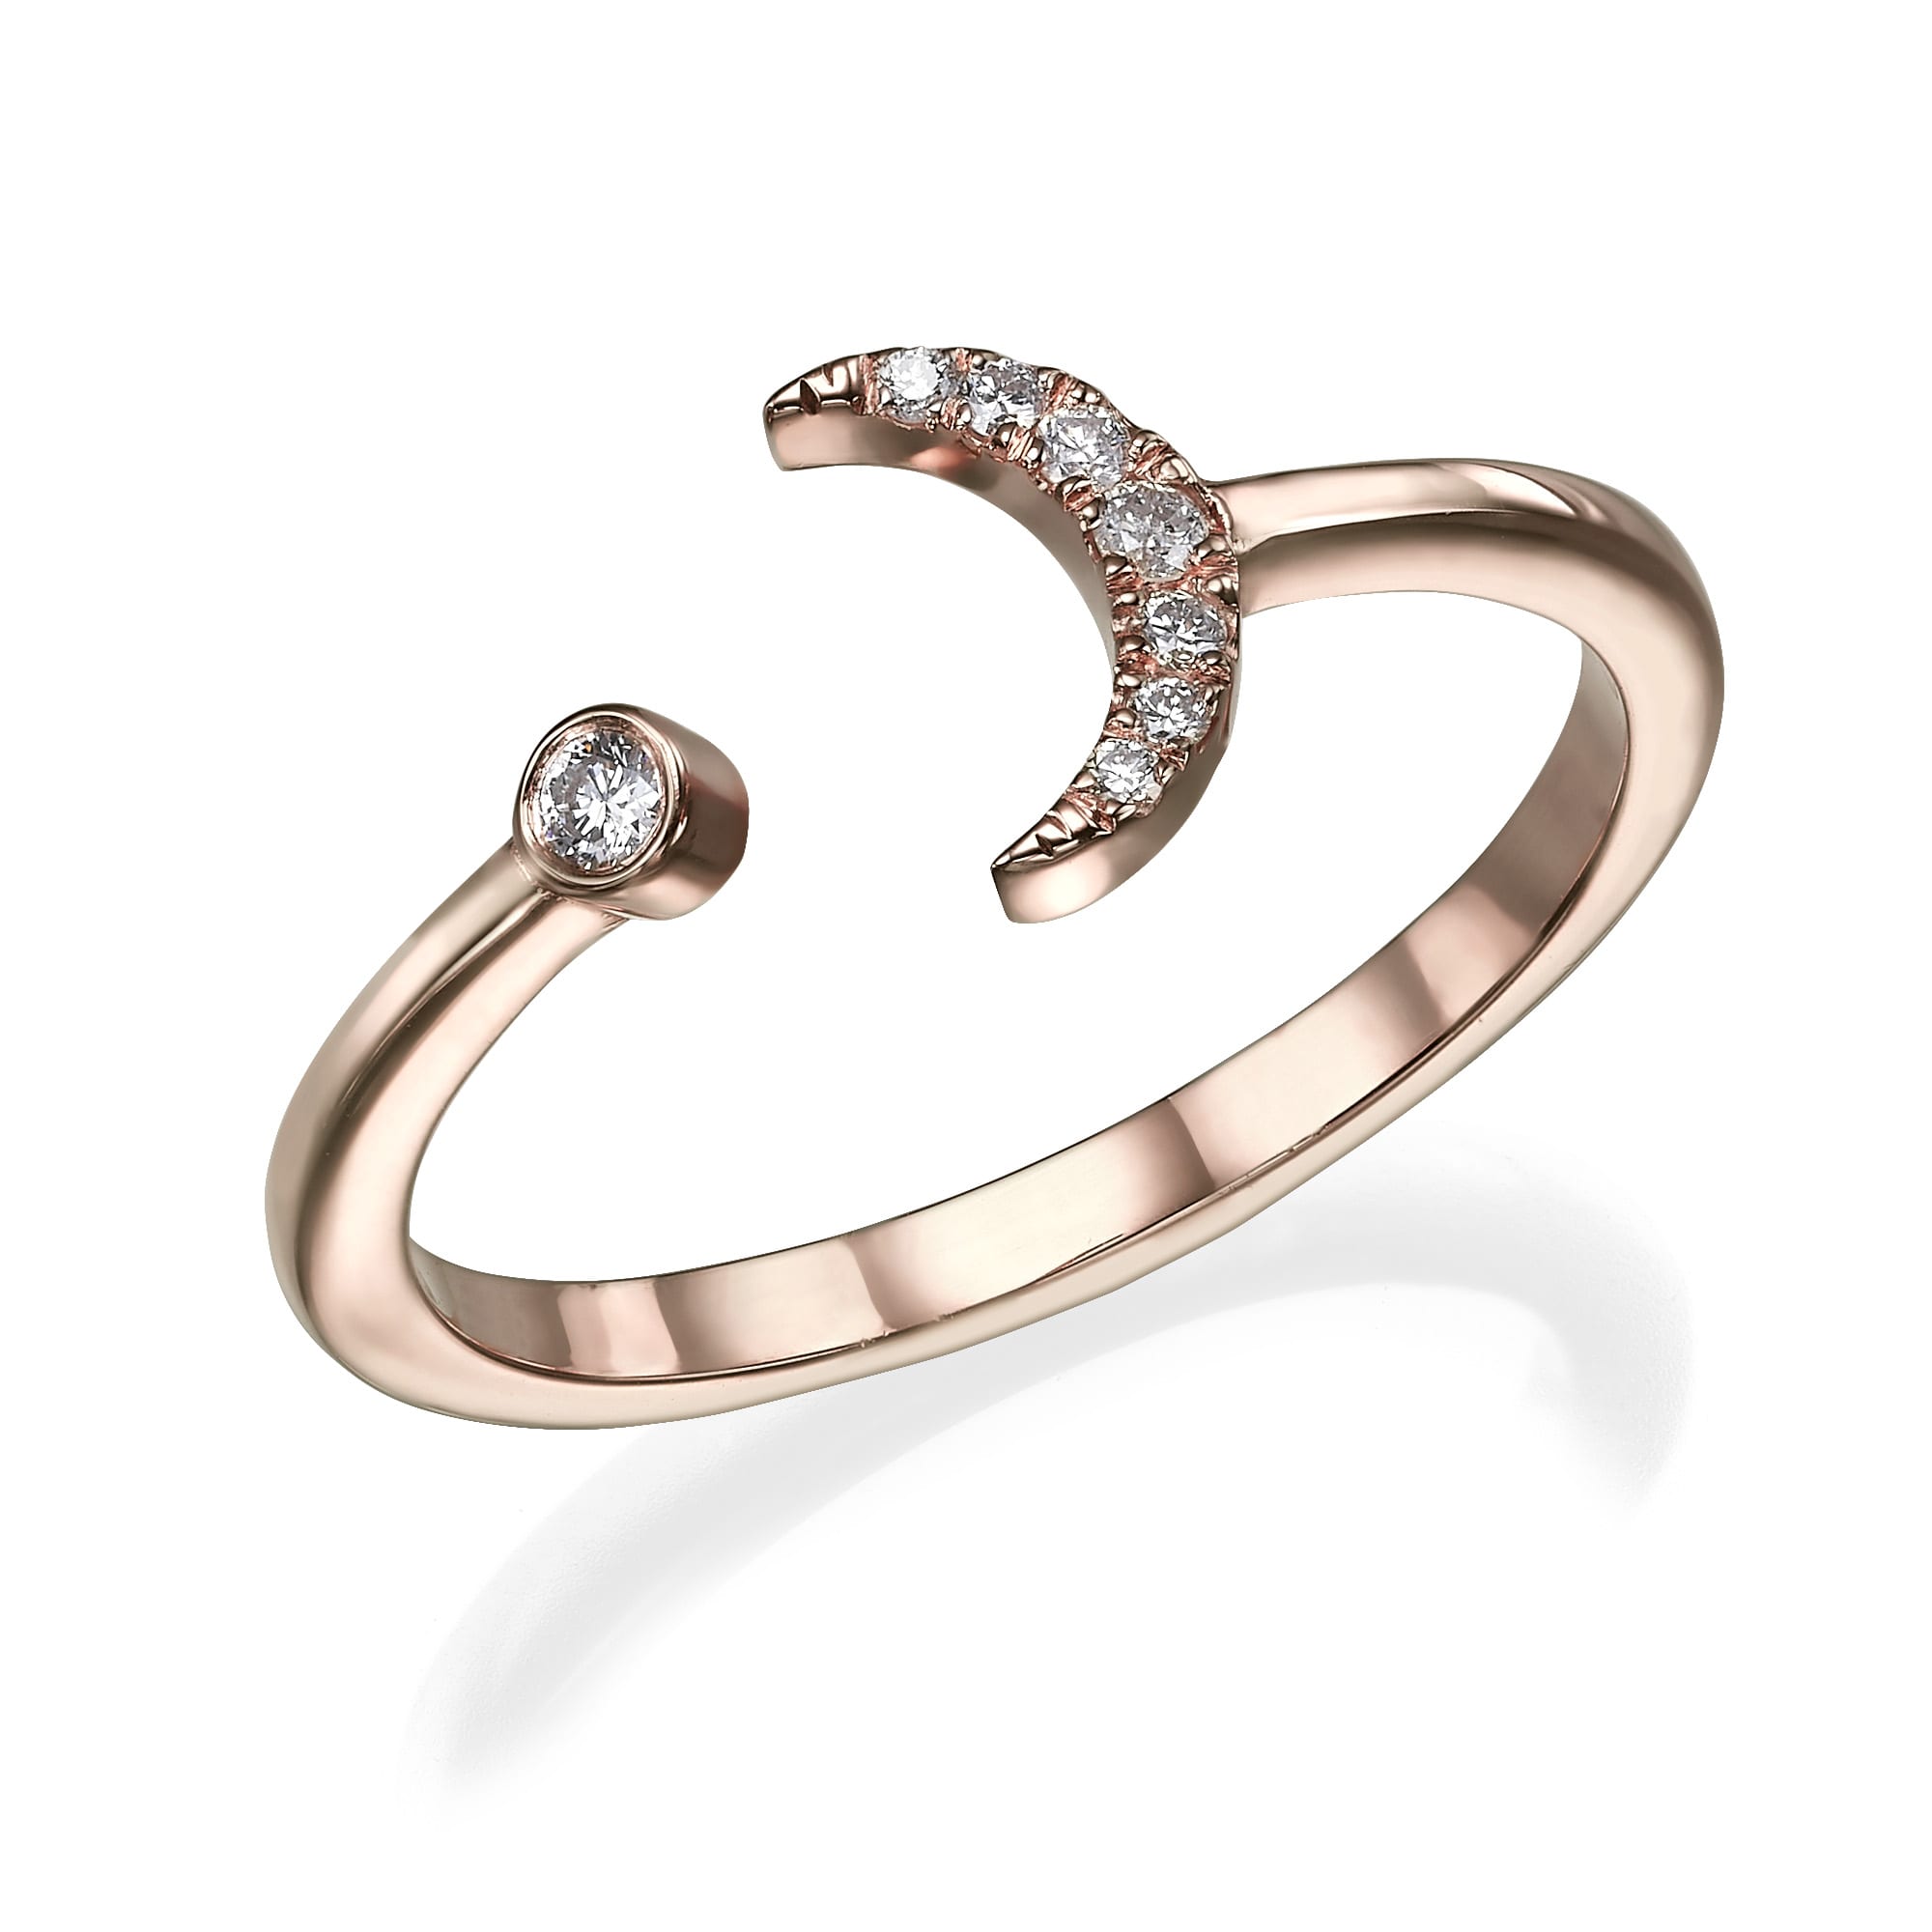 דגם טבעת יהלומים מהודר הכולל סהר עטור יהלומים קטנים ויהלום בודד בקצה הנגדי.